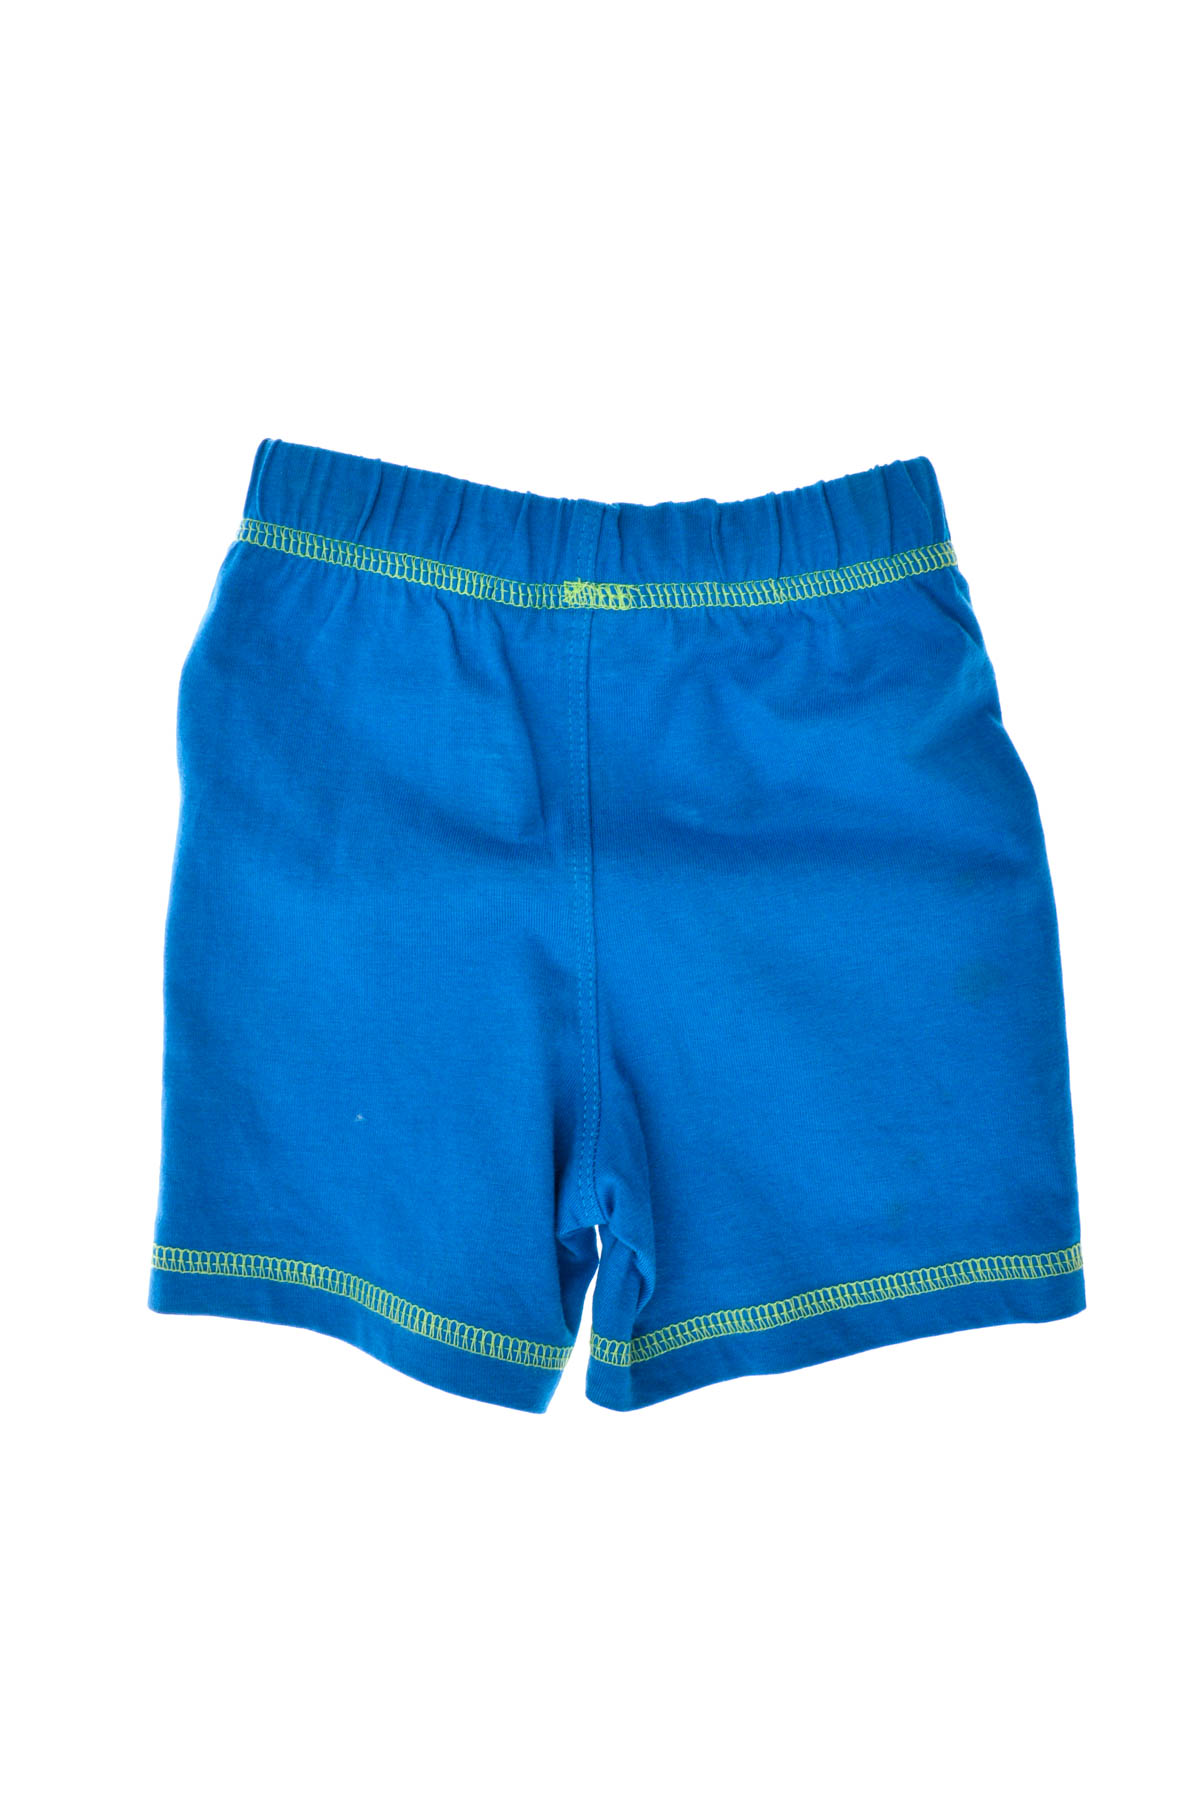 Baby boy's shorts - Liegelind - 1